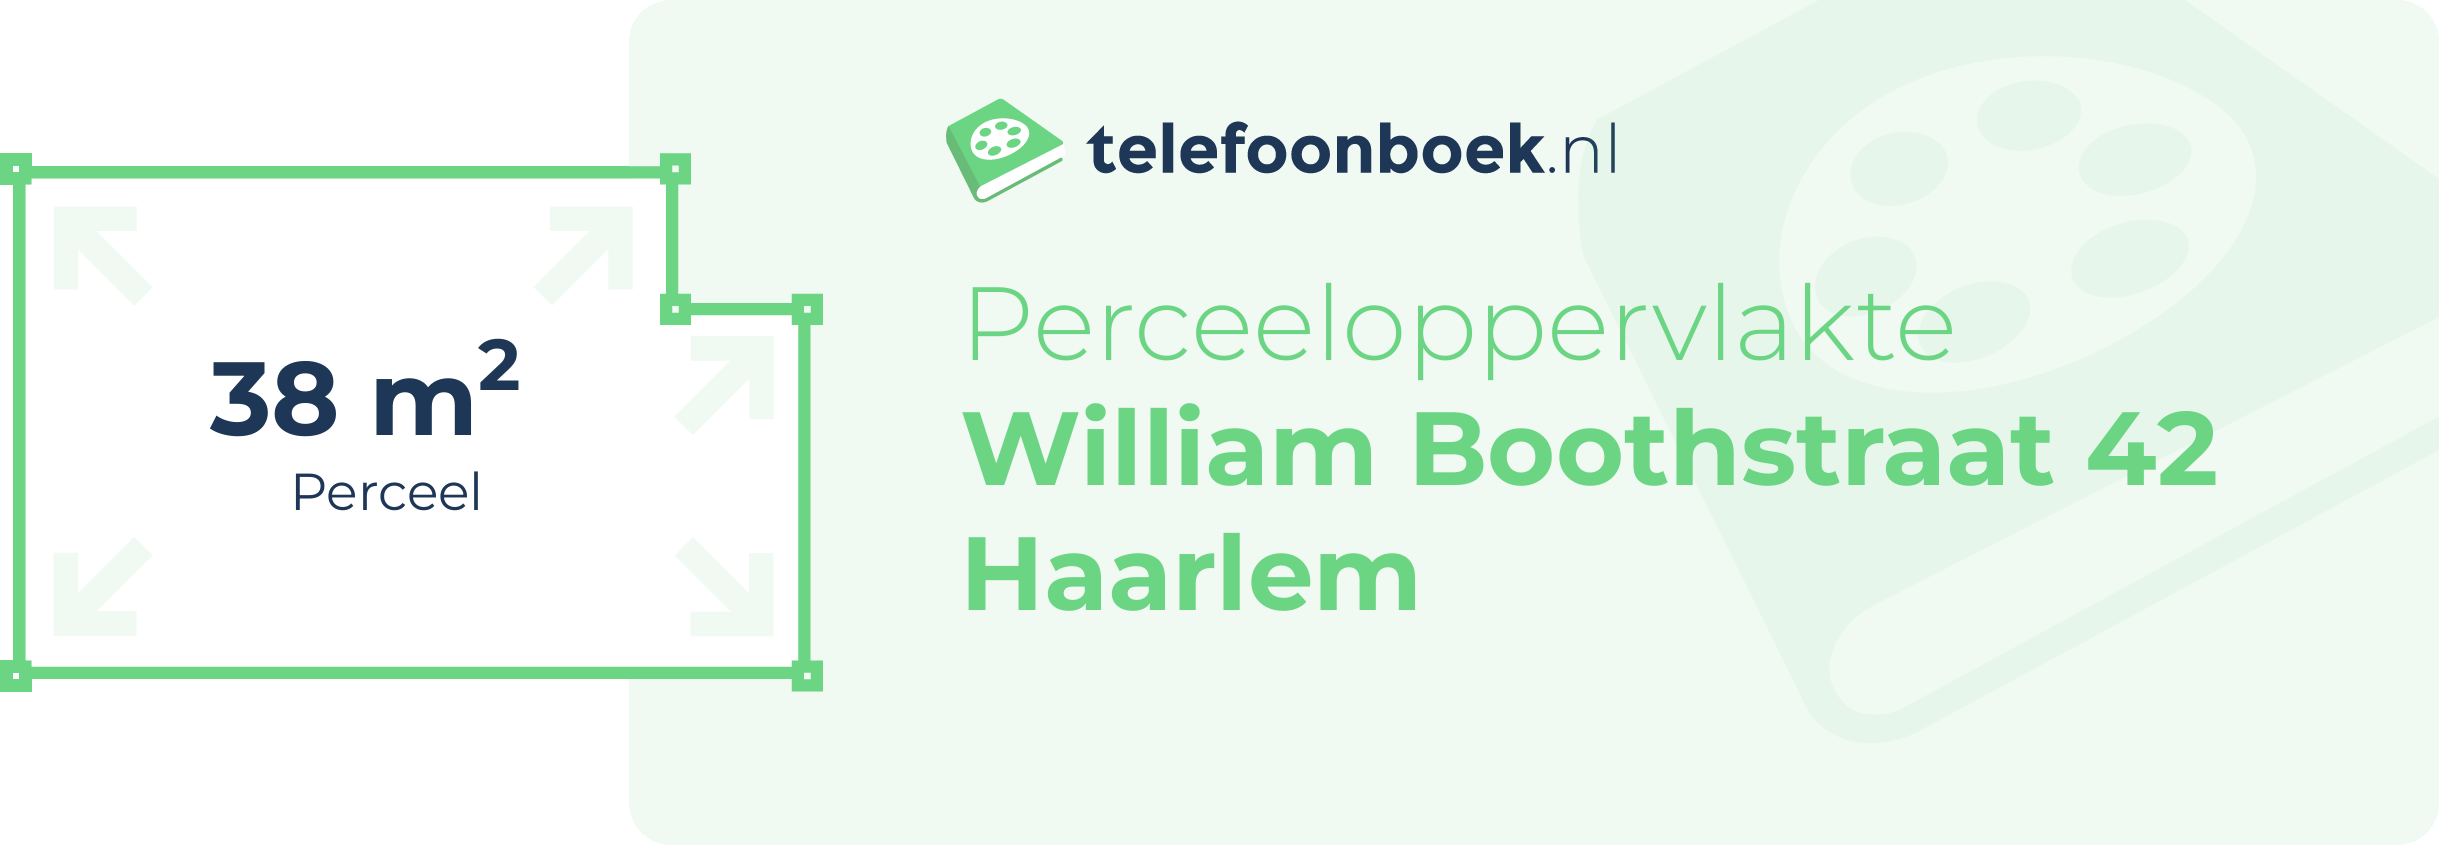 Perceeloppervlakte William Boothstraat 42 Haarlem